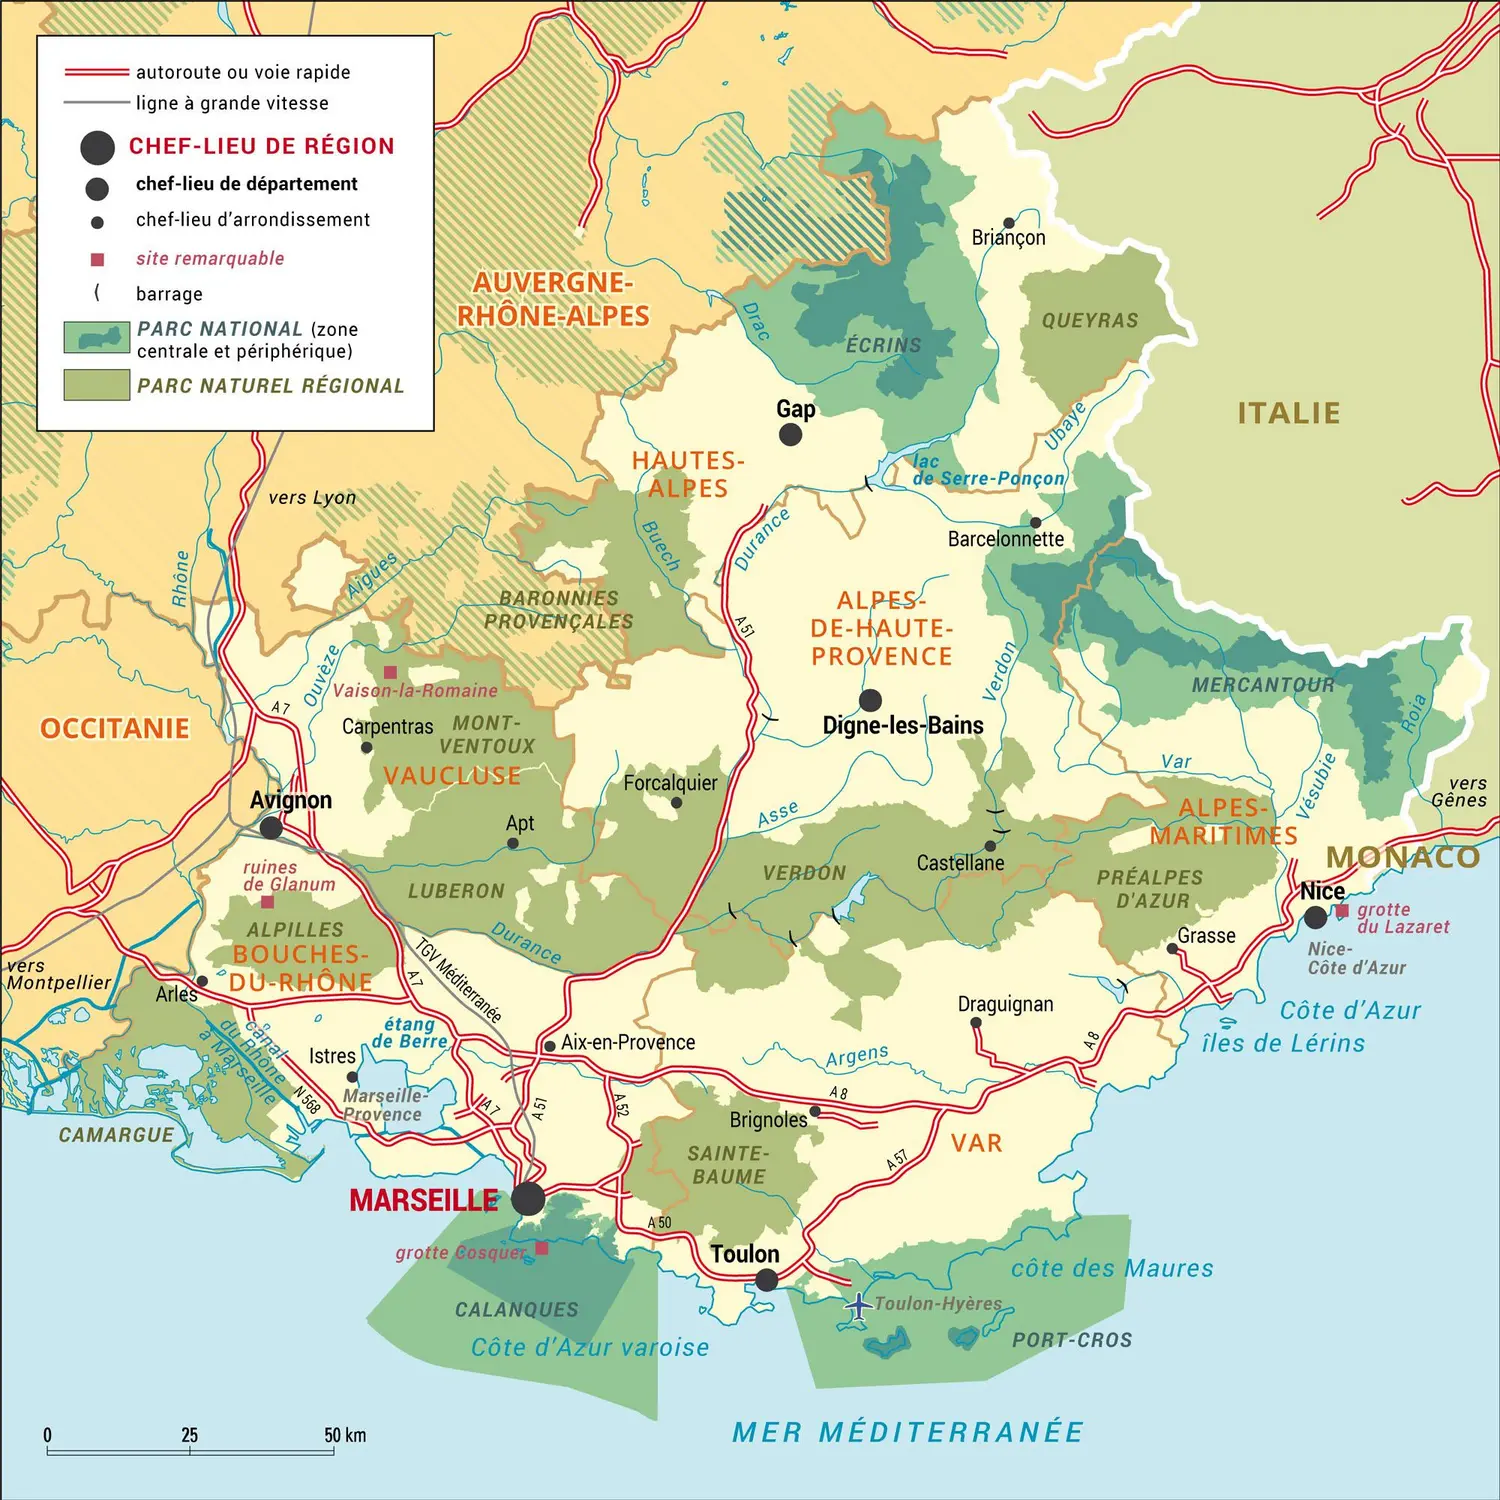 Provence-Alpes-Côte d'Azur : carte administrative